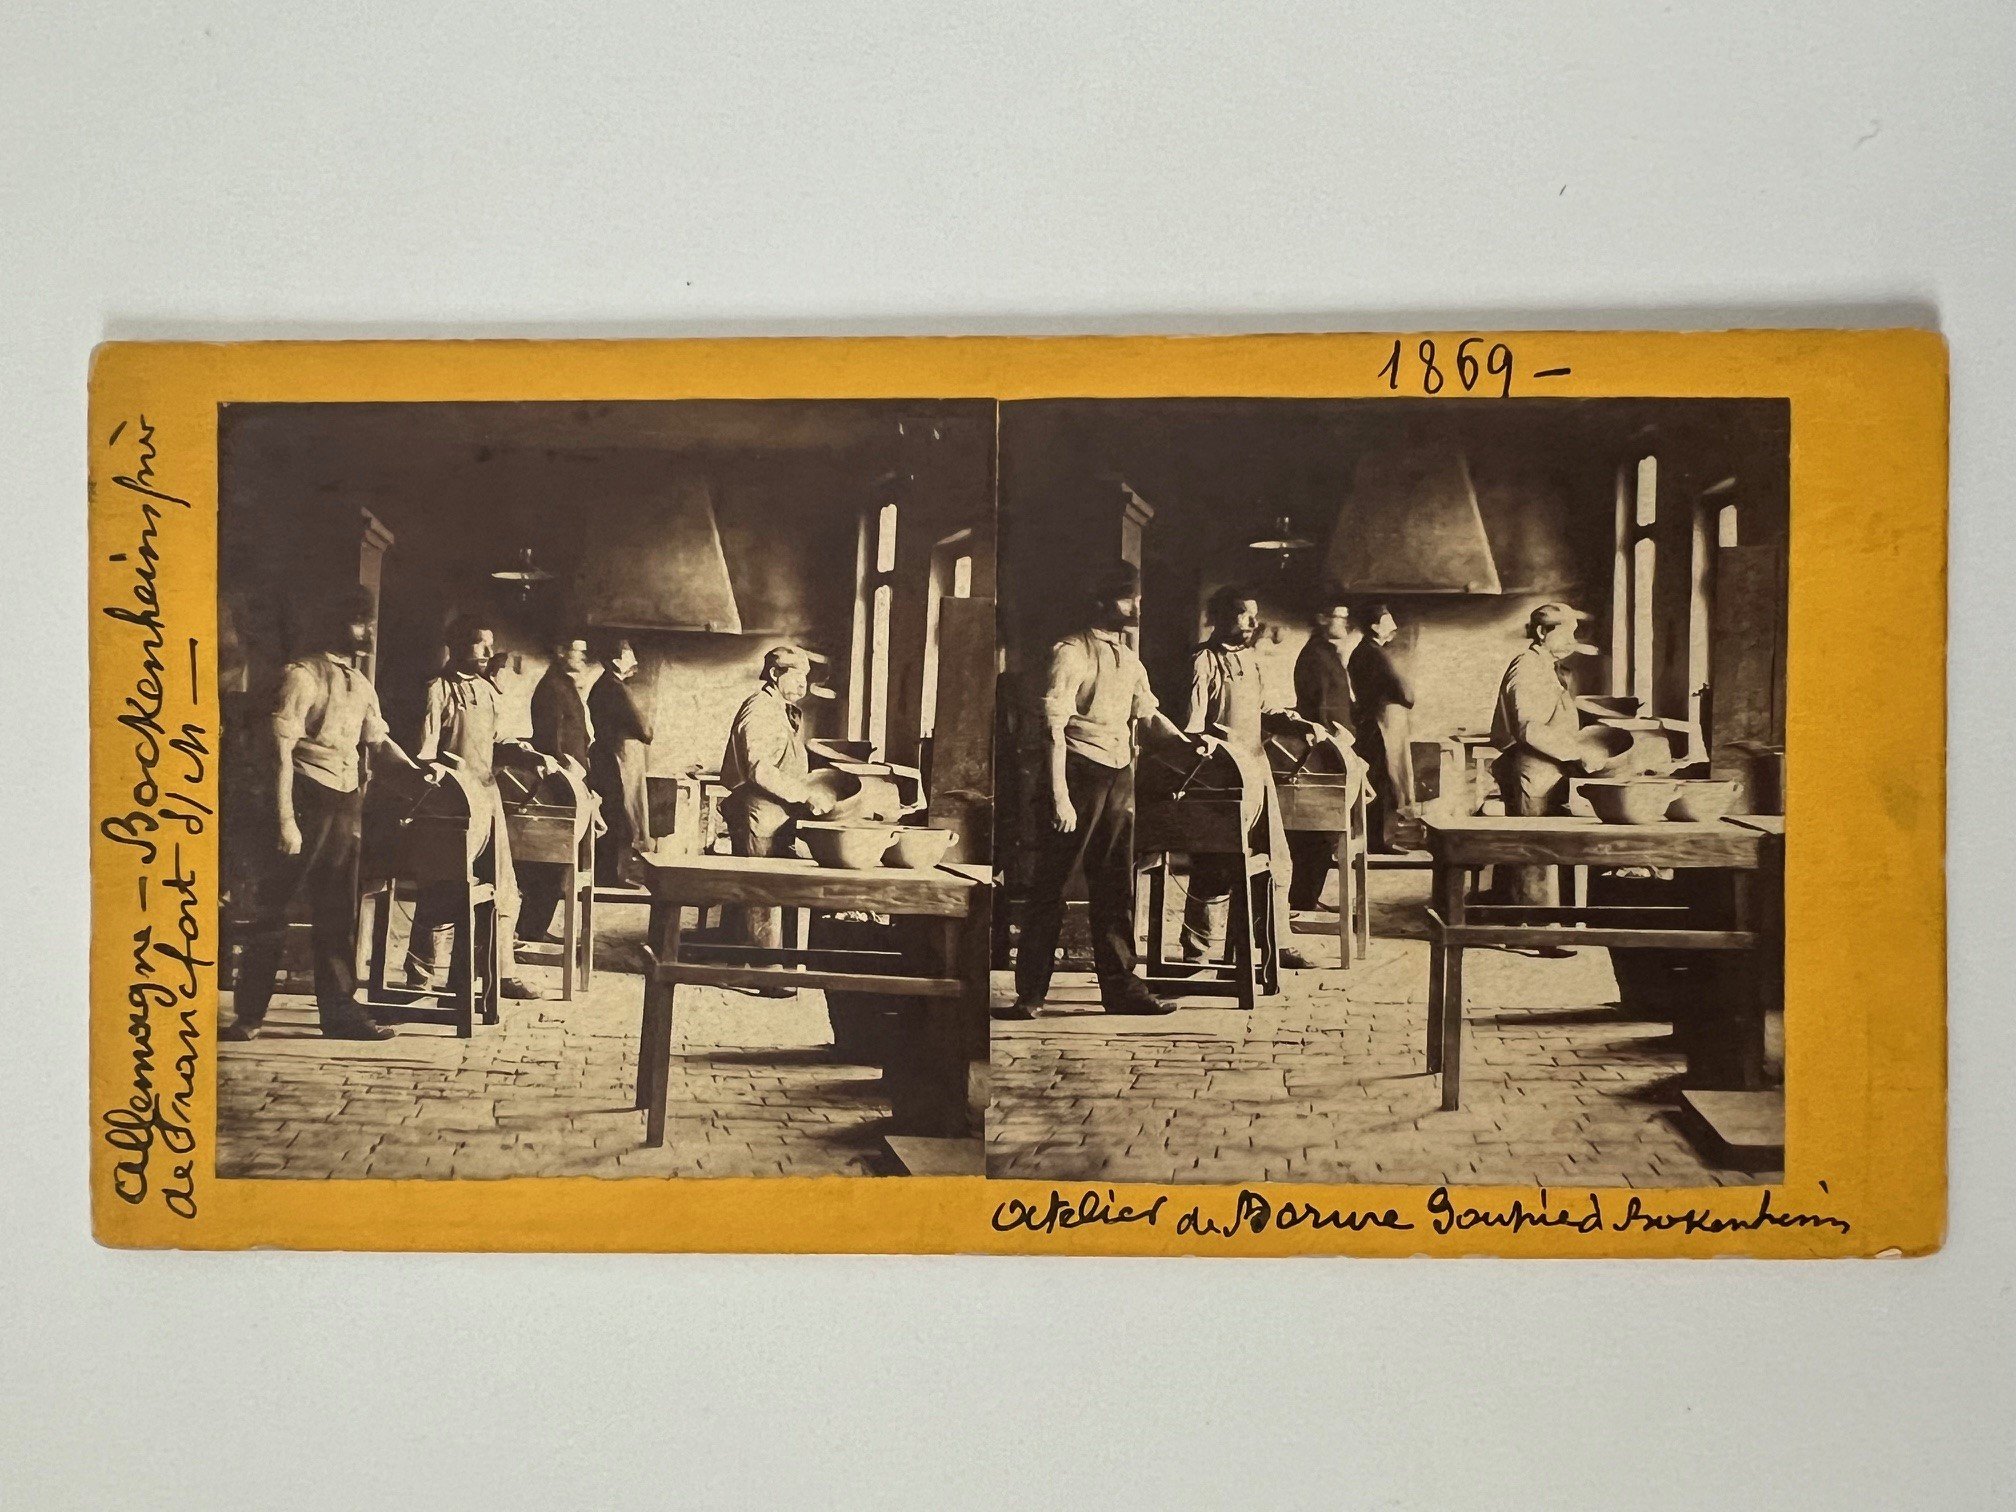 Stereobild, Unbekannter Fotograf, Vergolder-Werkstatt in Bockenheim, dat. 1869. (Taunus-Rhein-Main - Regionalgeschichtliche Sammlung Dr. Stefan Naas CC BY-NC-SA)